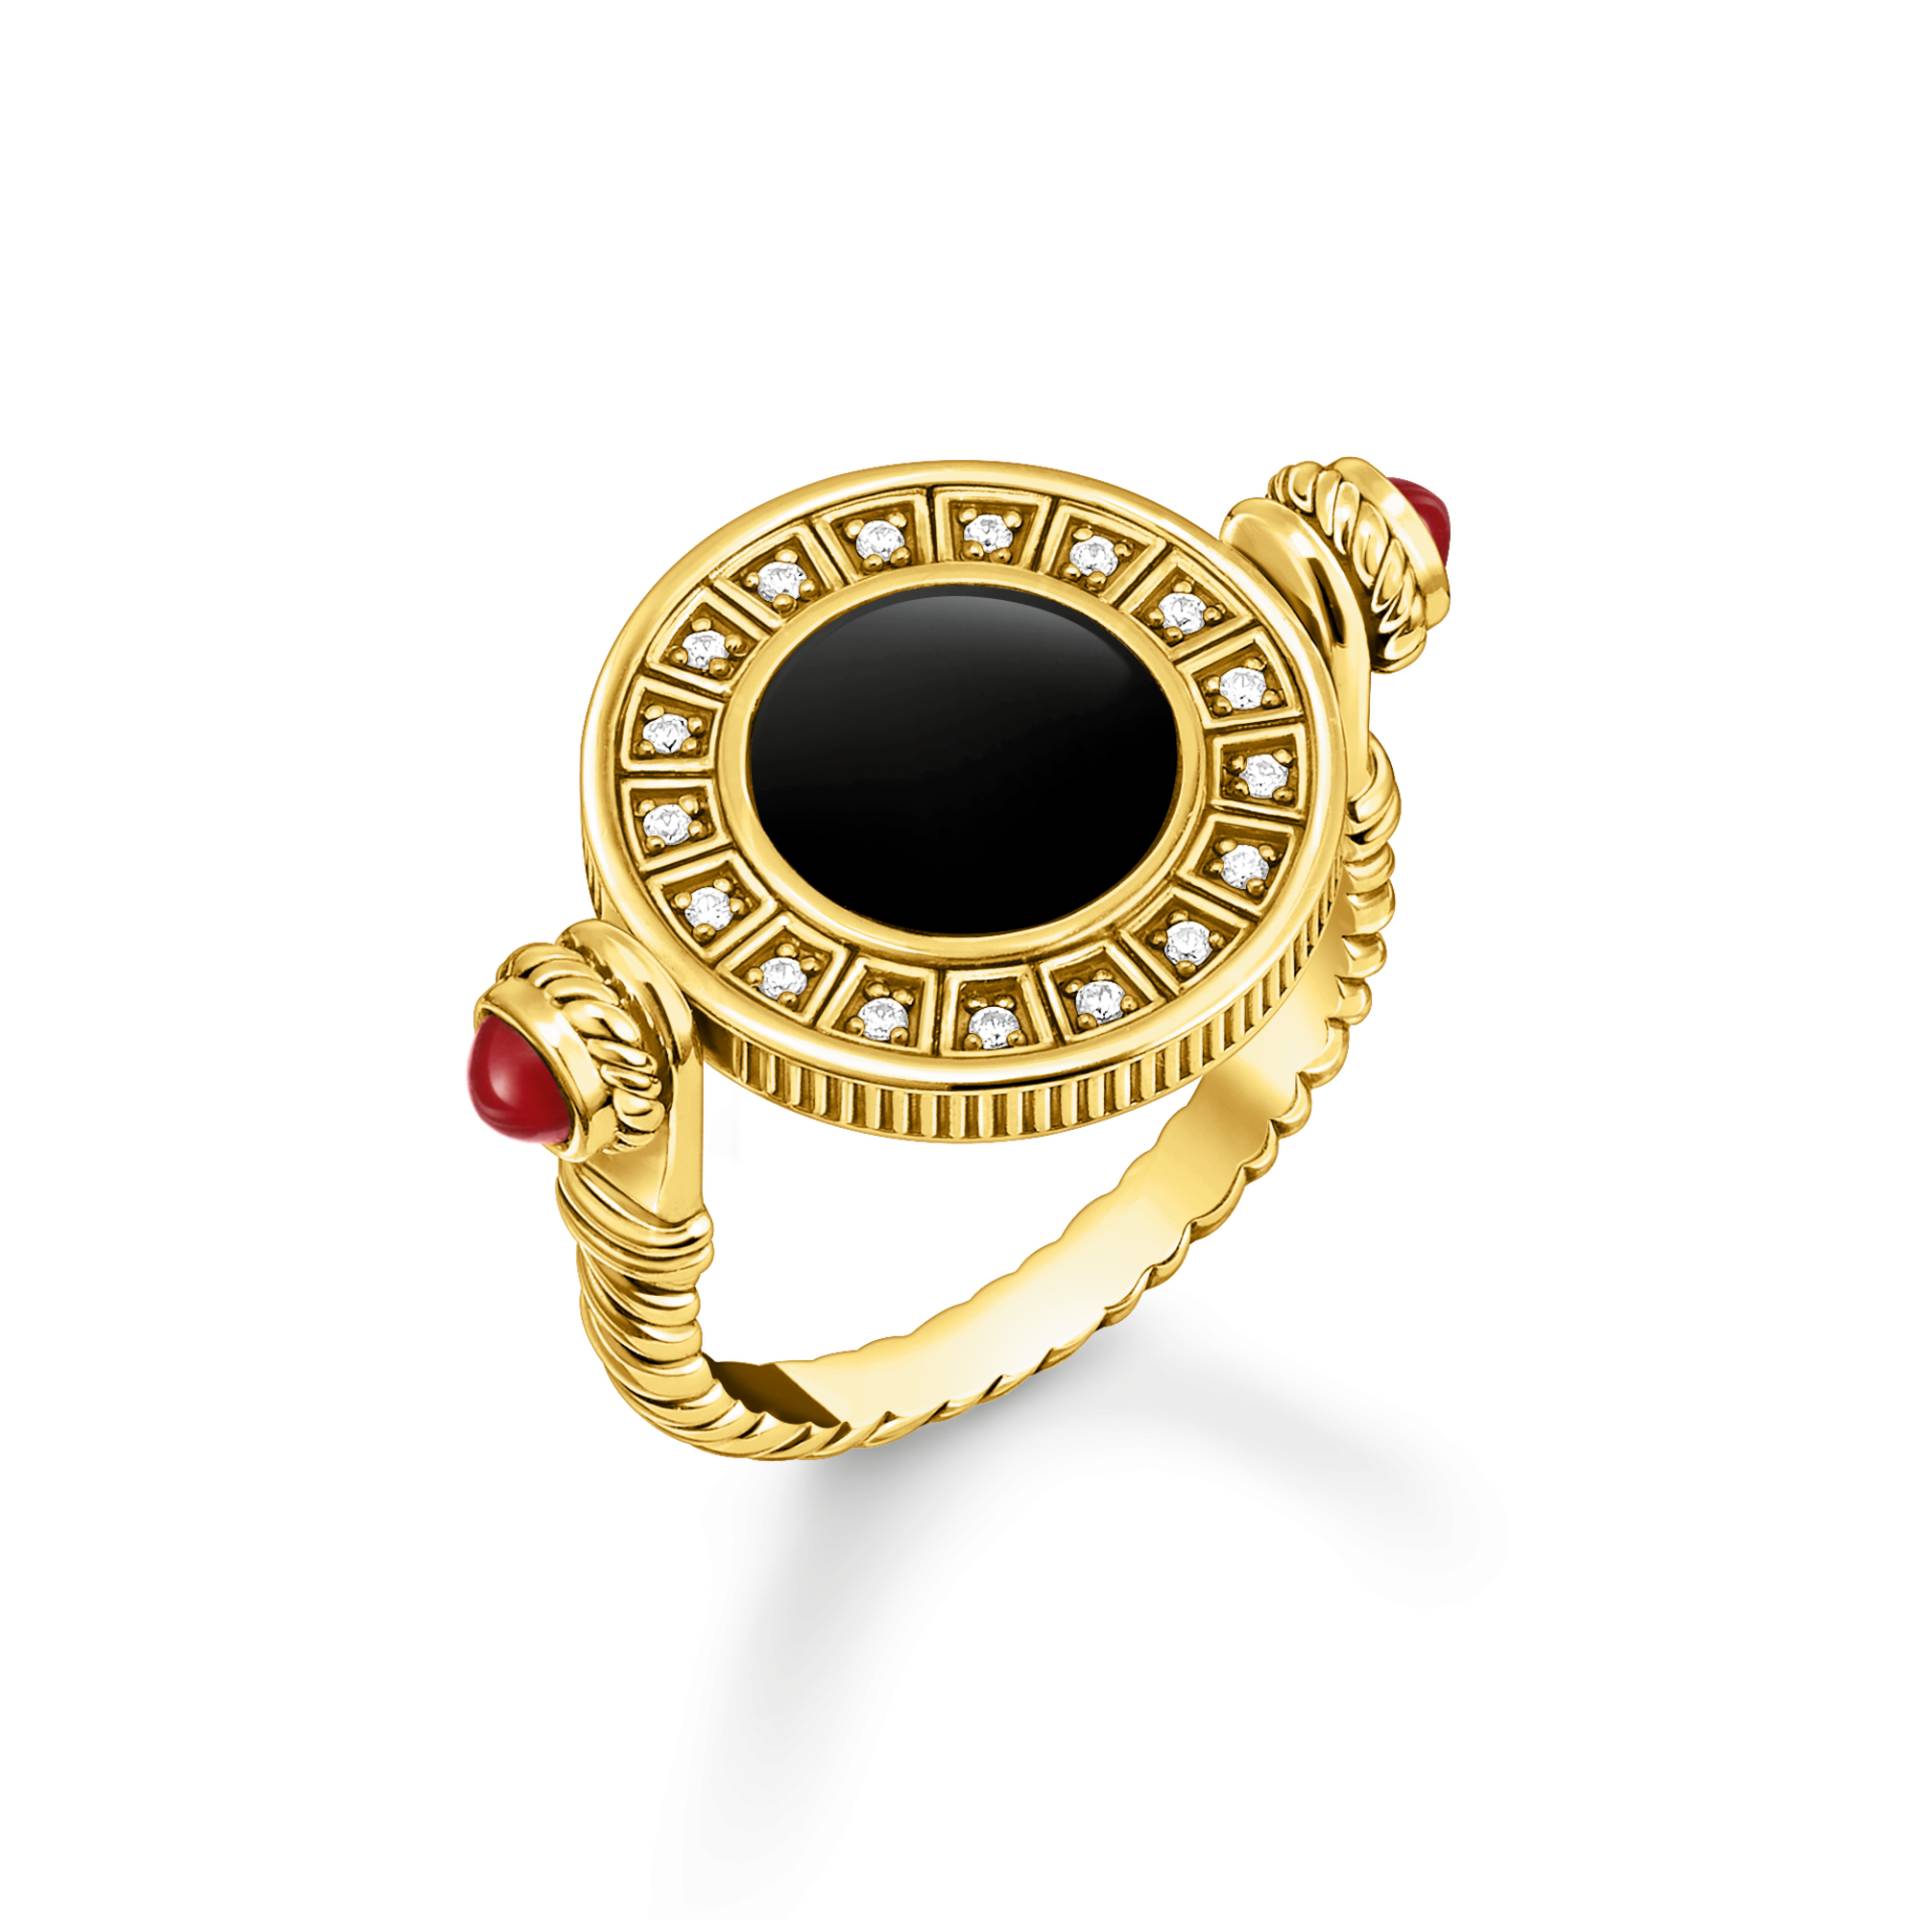 Thomas Sabo Ring drehbar mit schwarzem Onyx und weißen Steinen vergoldet mehrfarbig TR2427-522-7-60 von Thomas Sabo